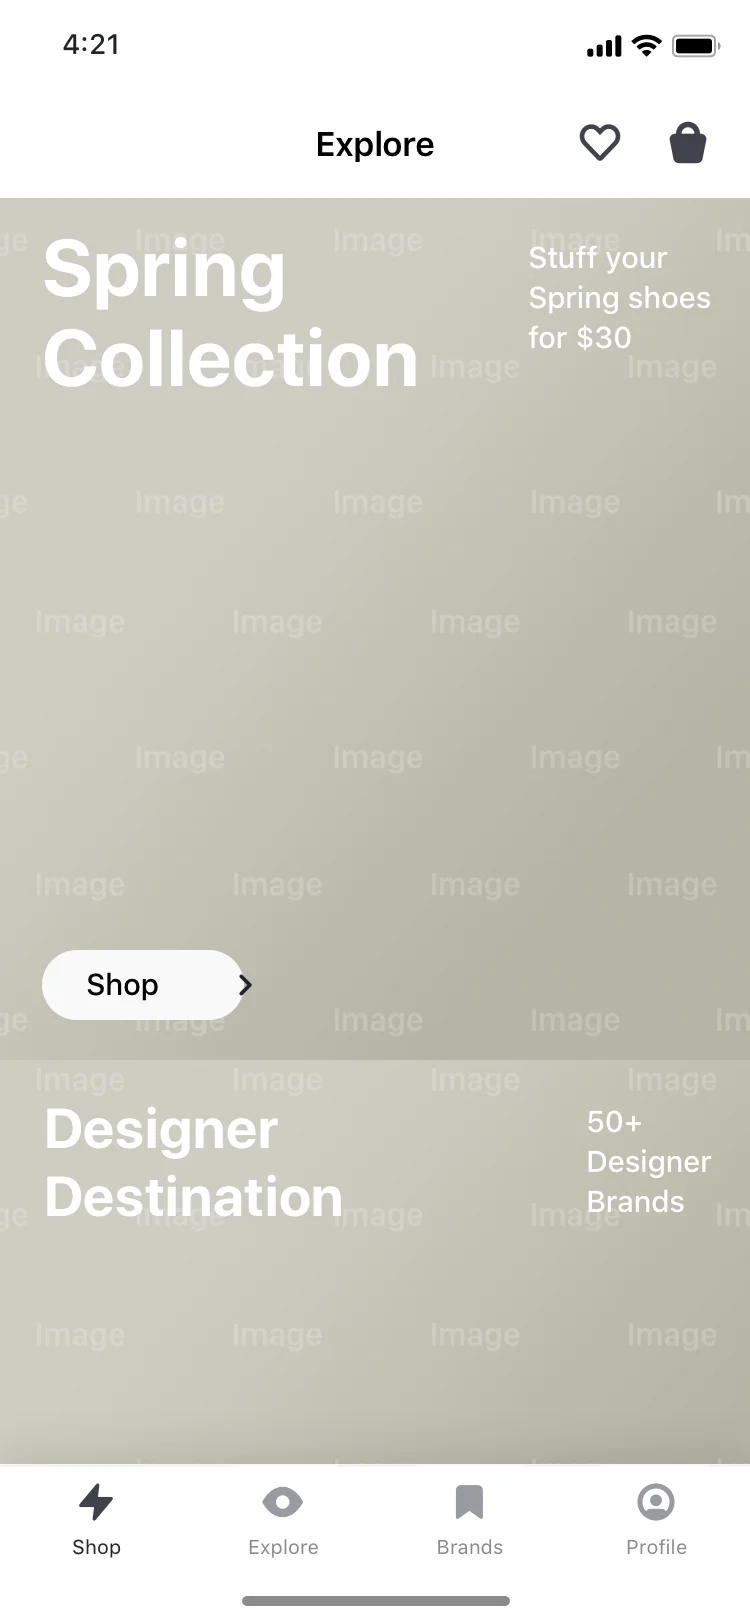 简洁时尚服装手机端商城购物电商app图片UI素材sketch模板-UI/UX-到位啦UI